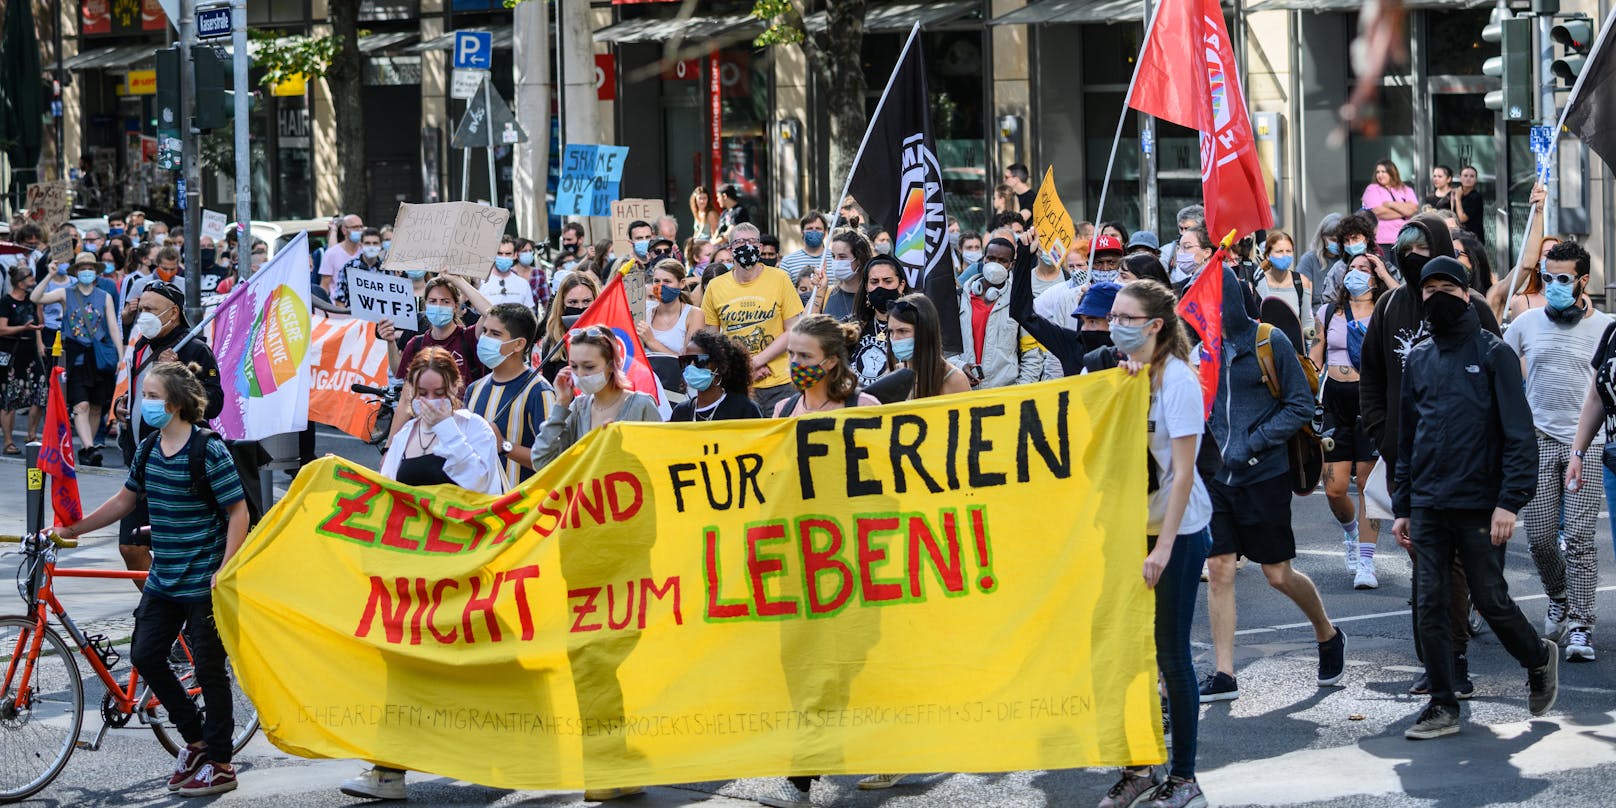 Heftig kritisiert wird bei den Demos die Asylpolitik der deutschen Bundesregierung sowie jene der Europäischen Union.